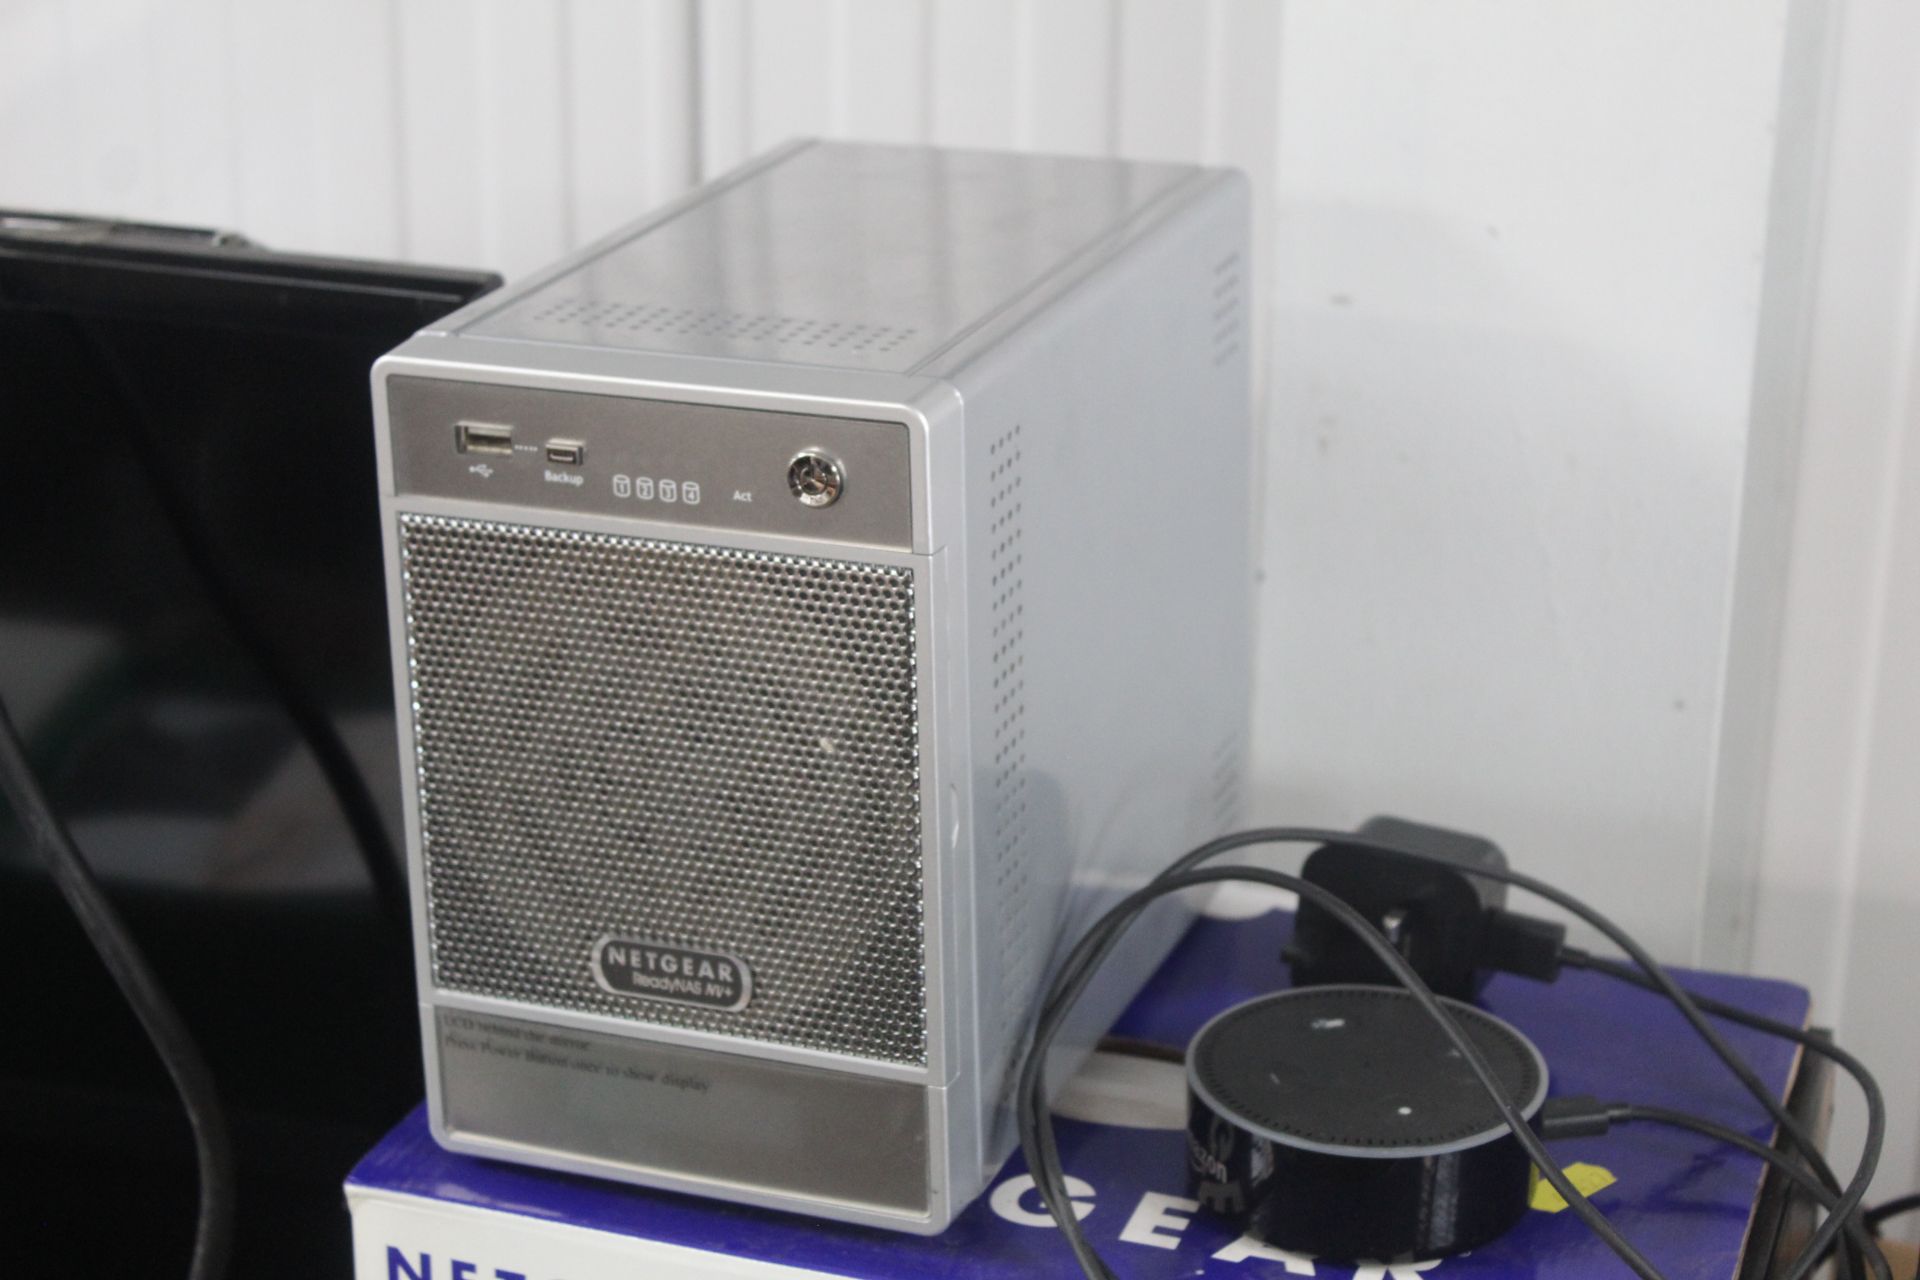 A Netgear desktop network storage box and an Amazo - Image 2 of 2